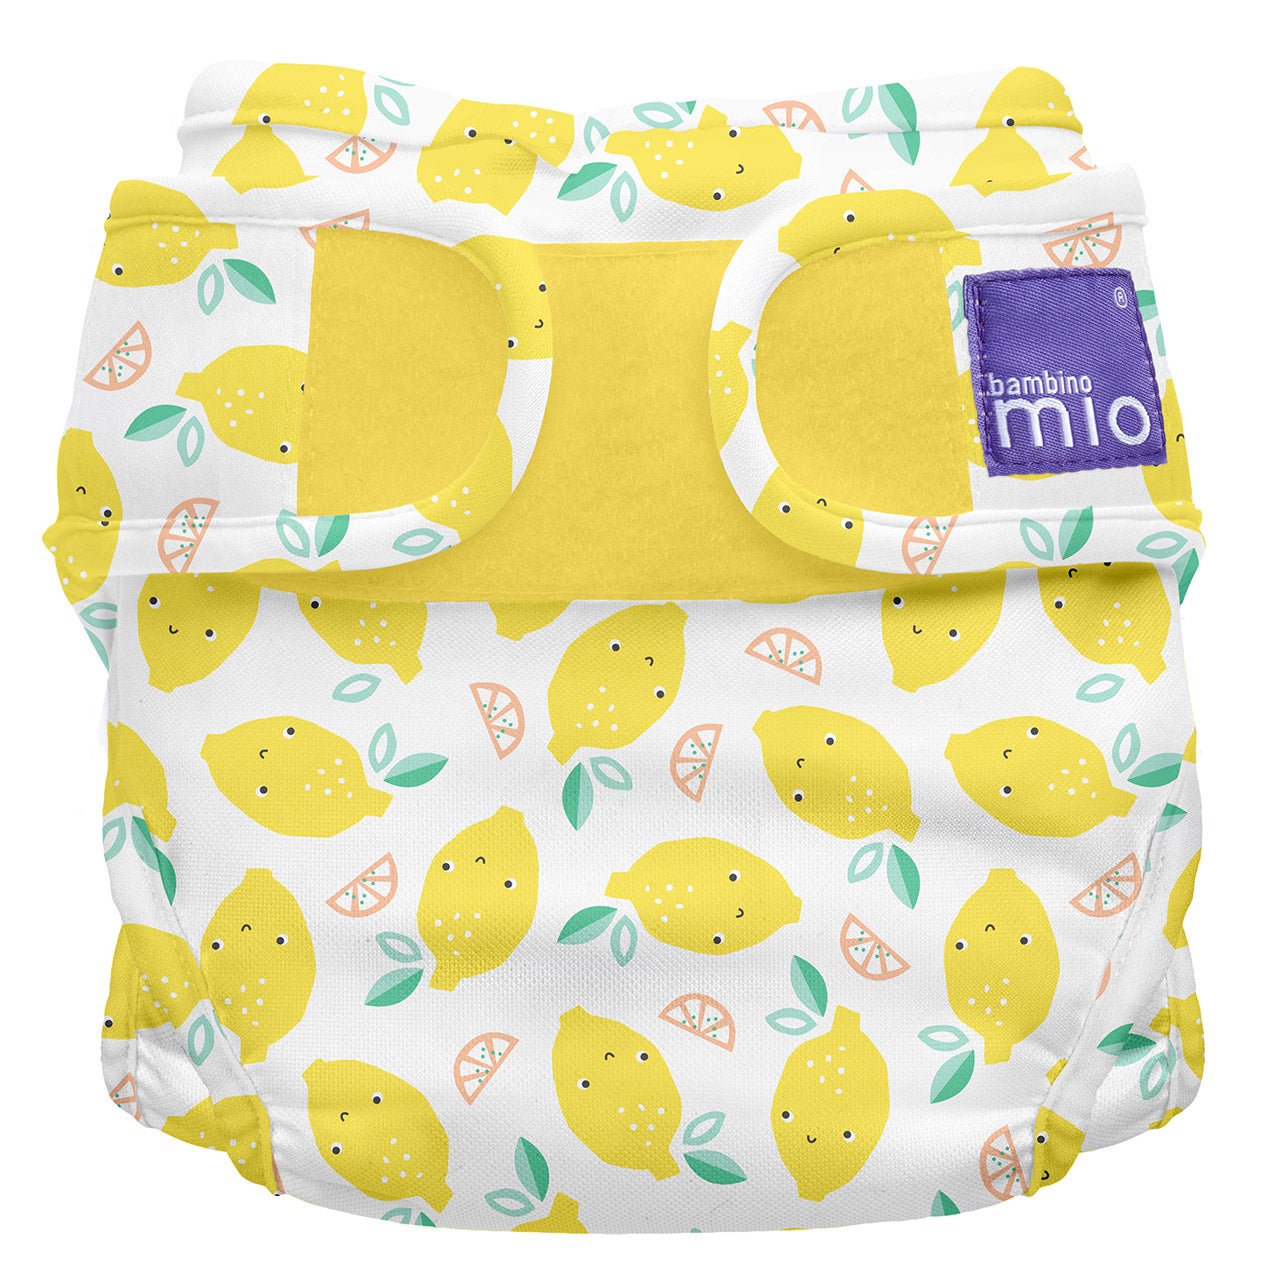 Bambino MioMioduo Reusable Nappy CoverSize: Size 1Colour: Lemon Dropreusable nappies nappy coversEarthlets